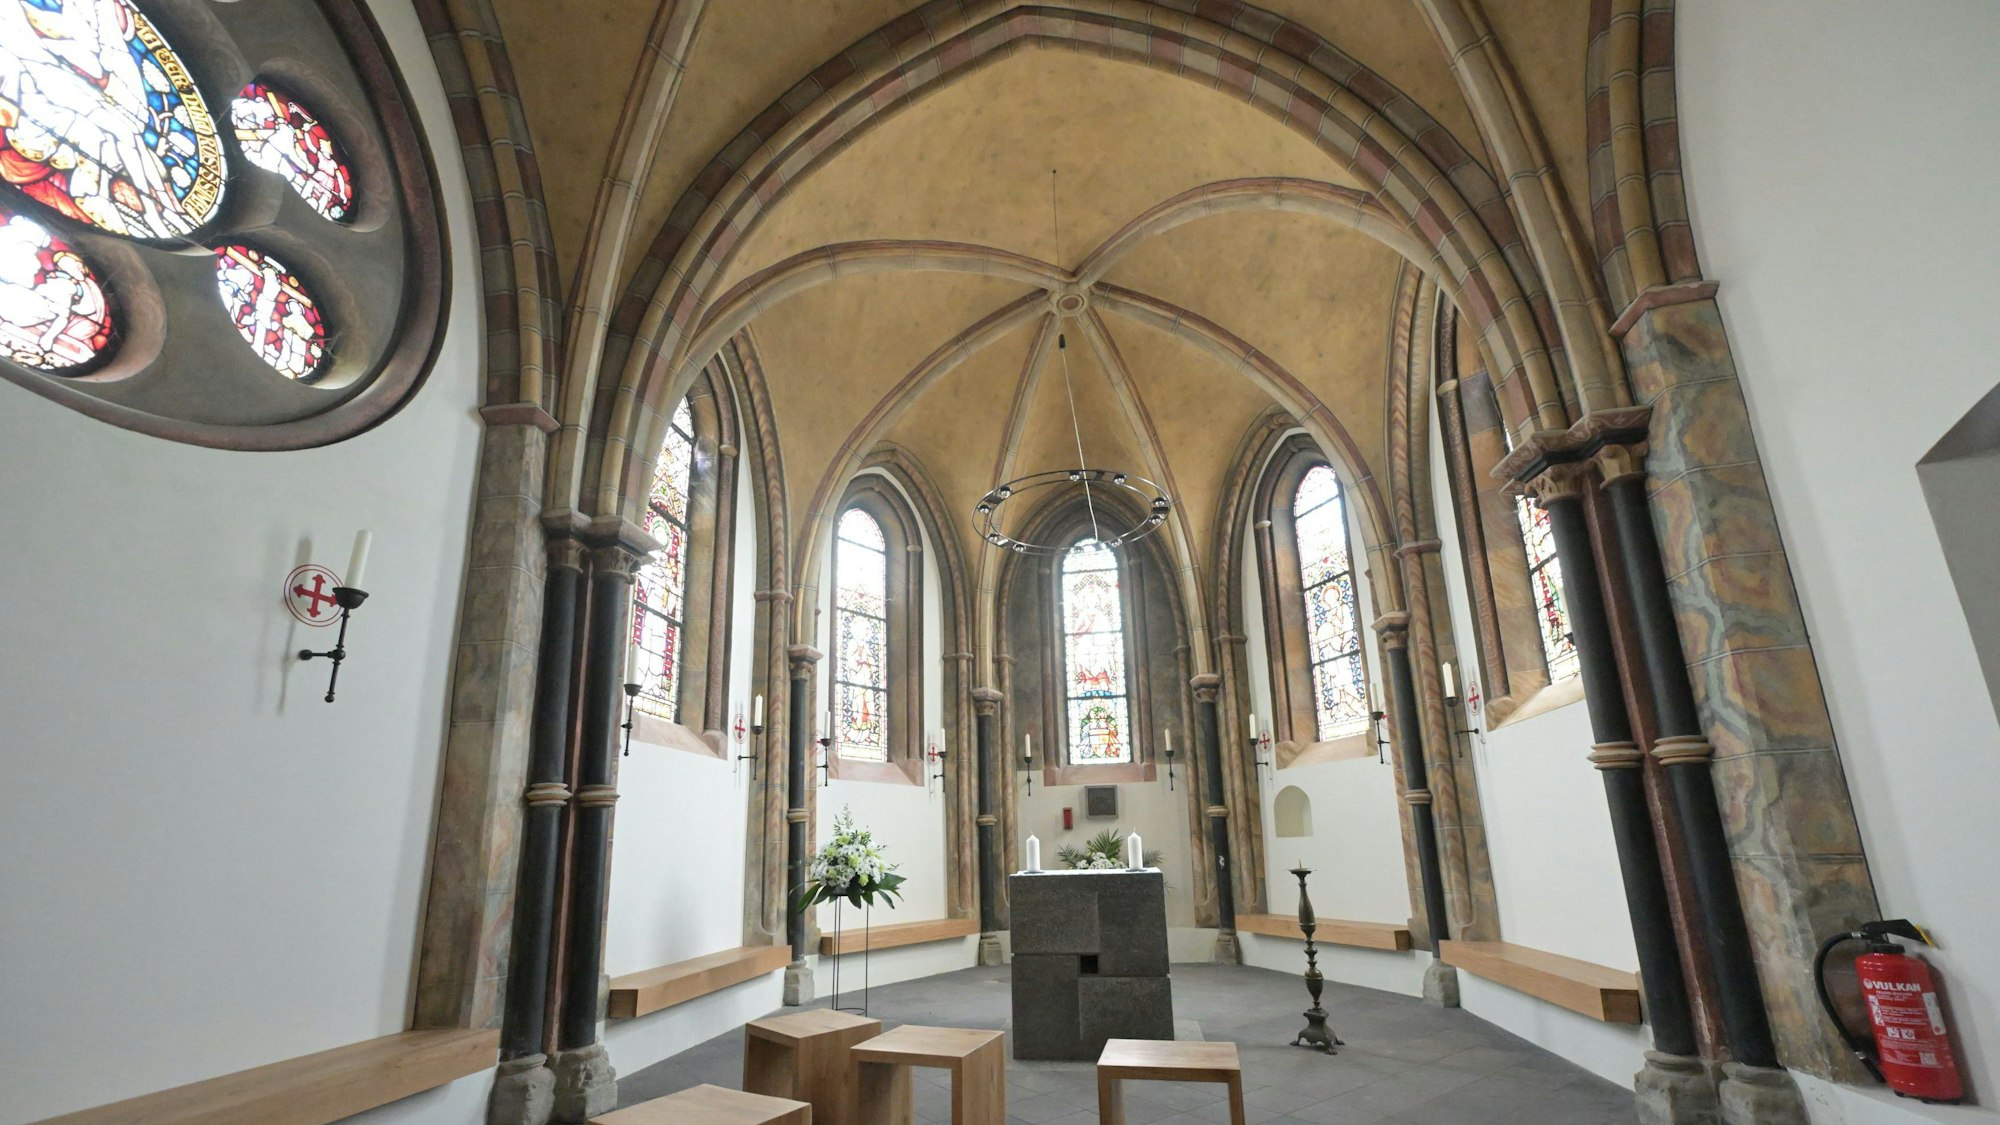 Innenraum der Markuskapelle Altenberg: Kreuzrippengewölbe, darunter fünf romanische Fenster, Sitzbänke und Hocker aus hellem Holt, davor ein Steinblock als Altar.